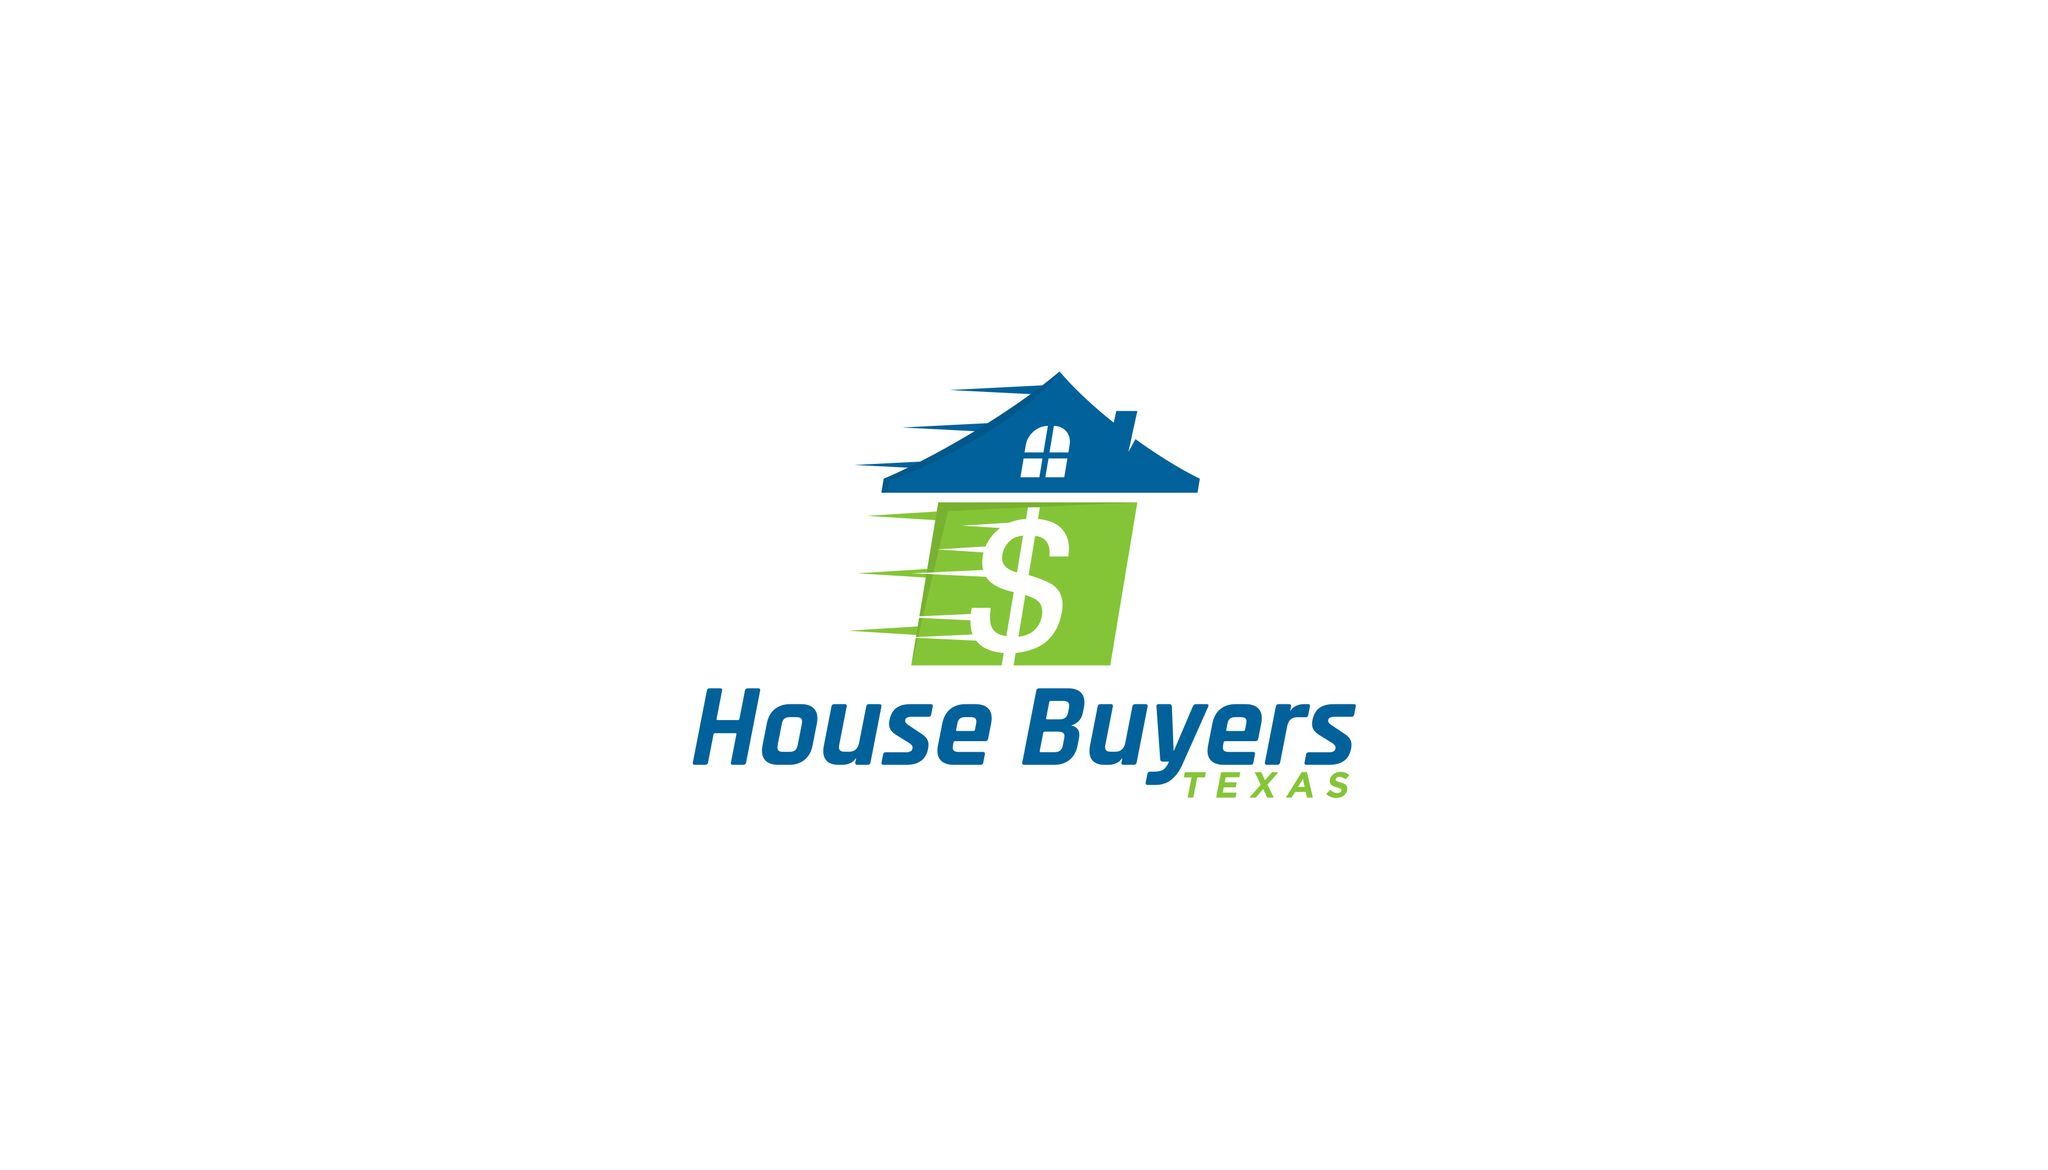 House-Buyers-Texas-4.jpg